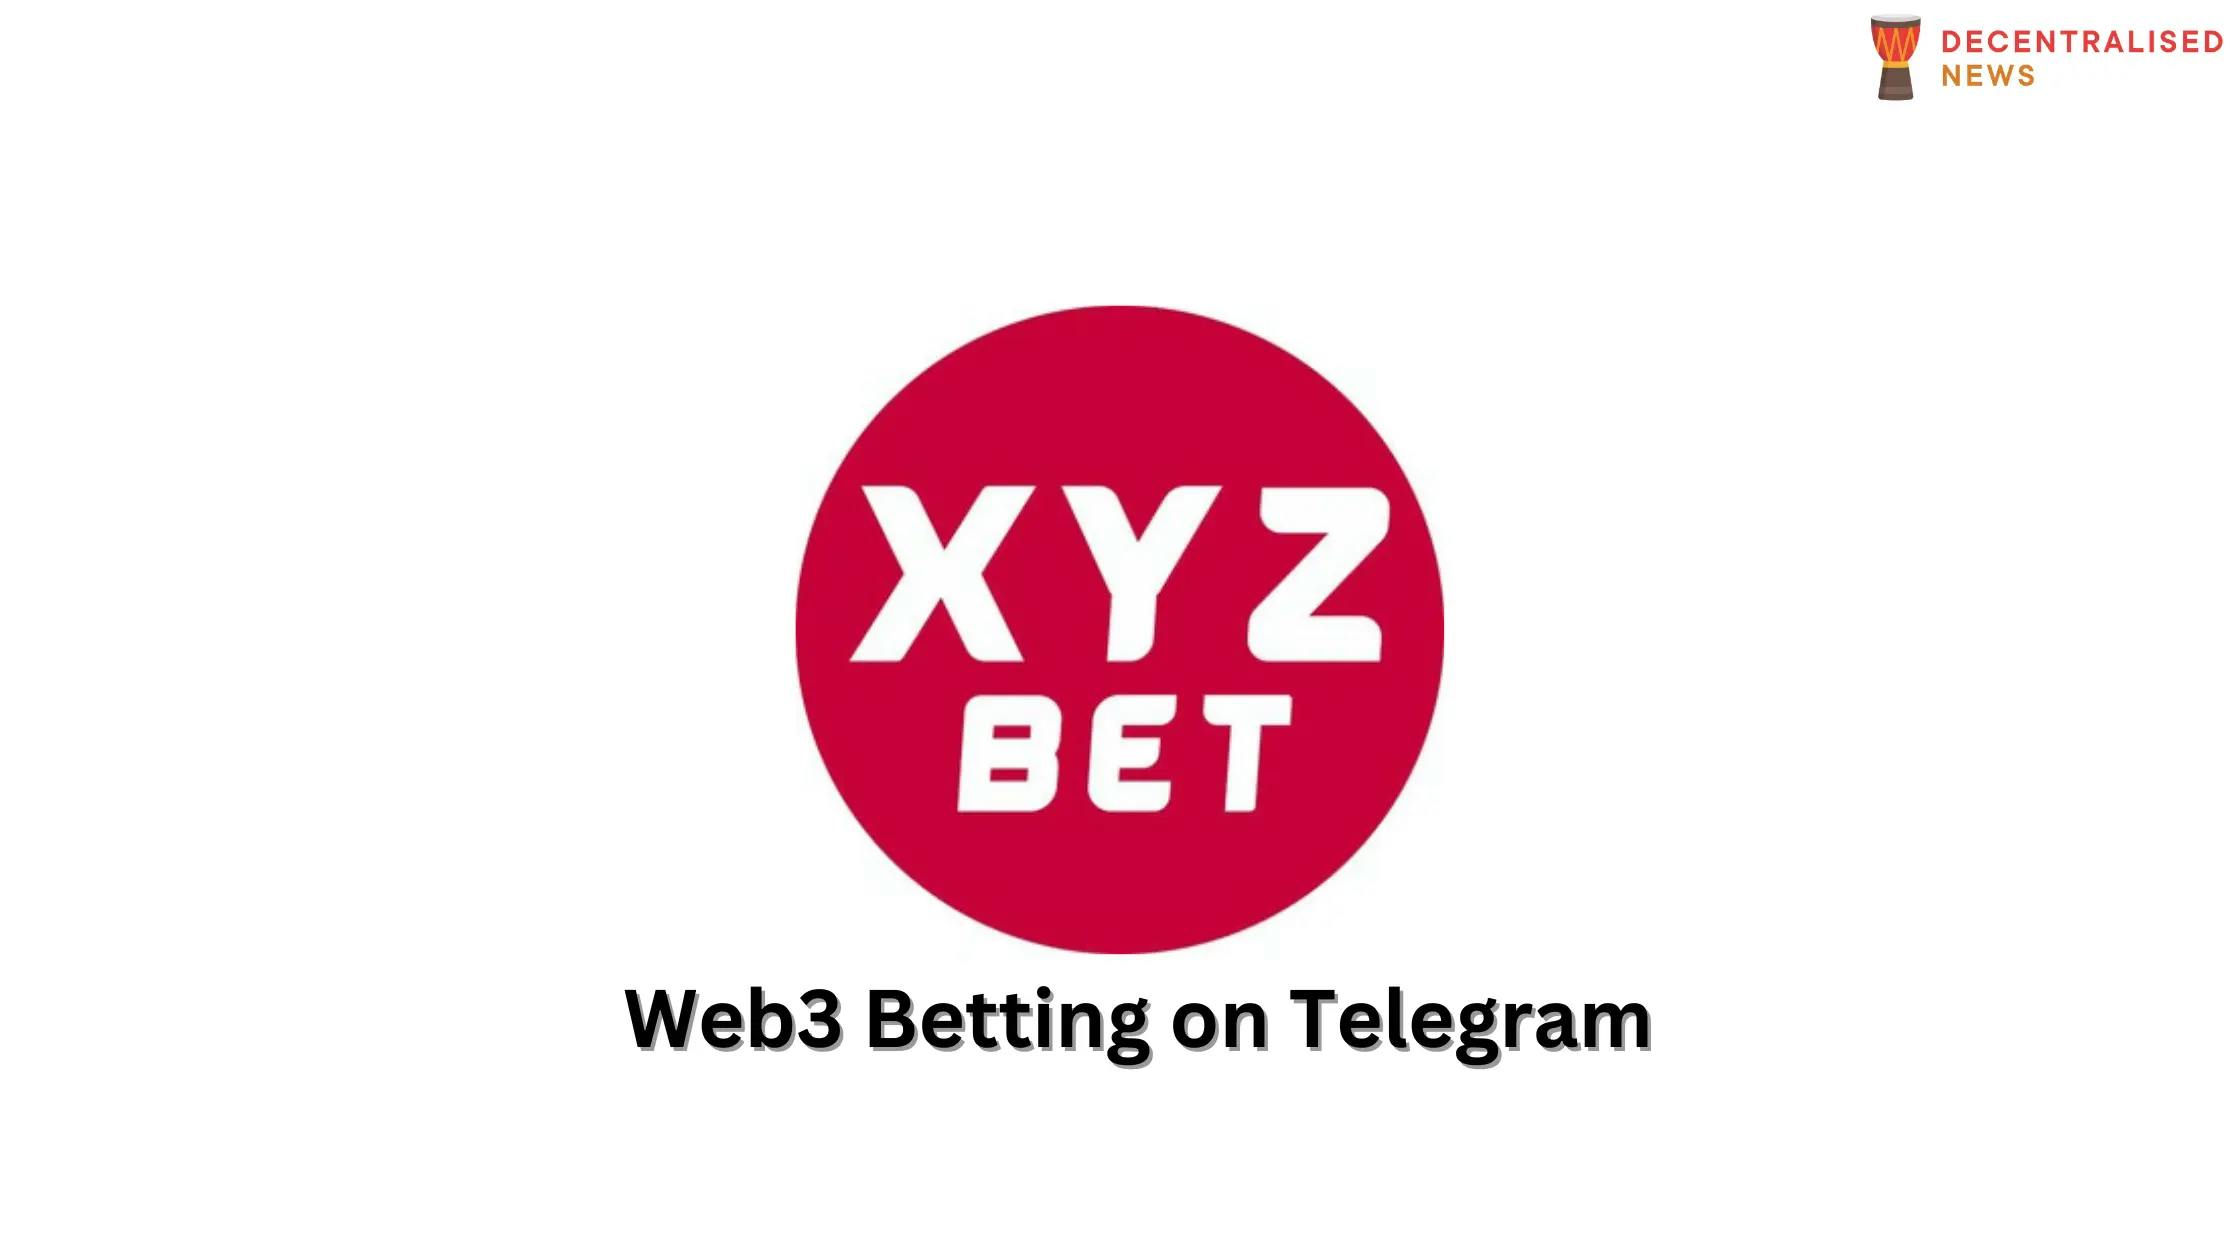 XYZBET Decentralized Betting App on Telegram